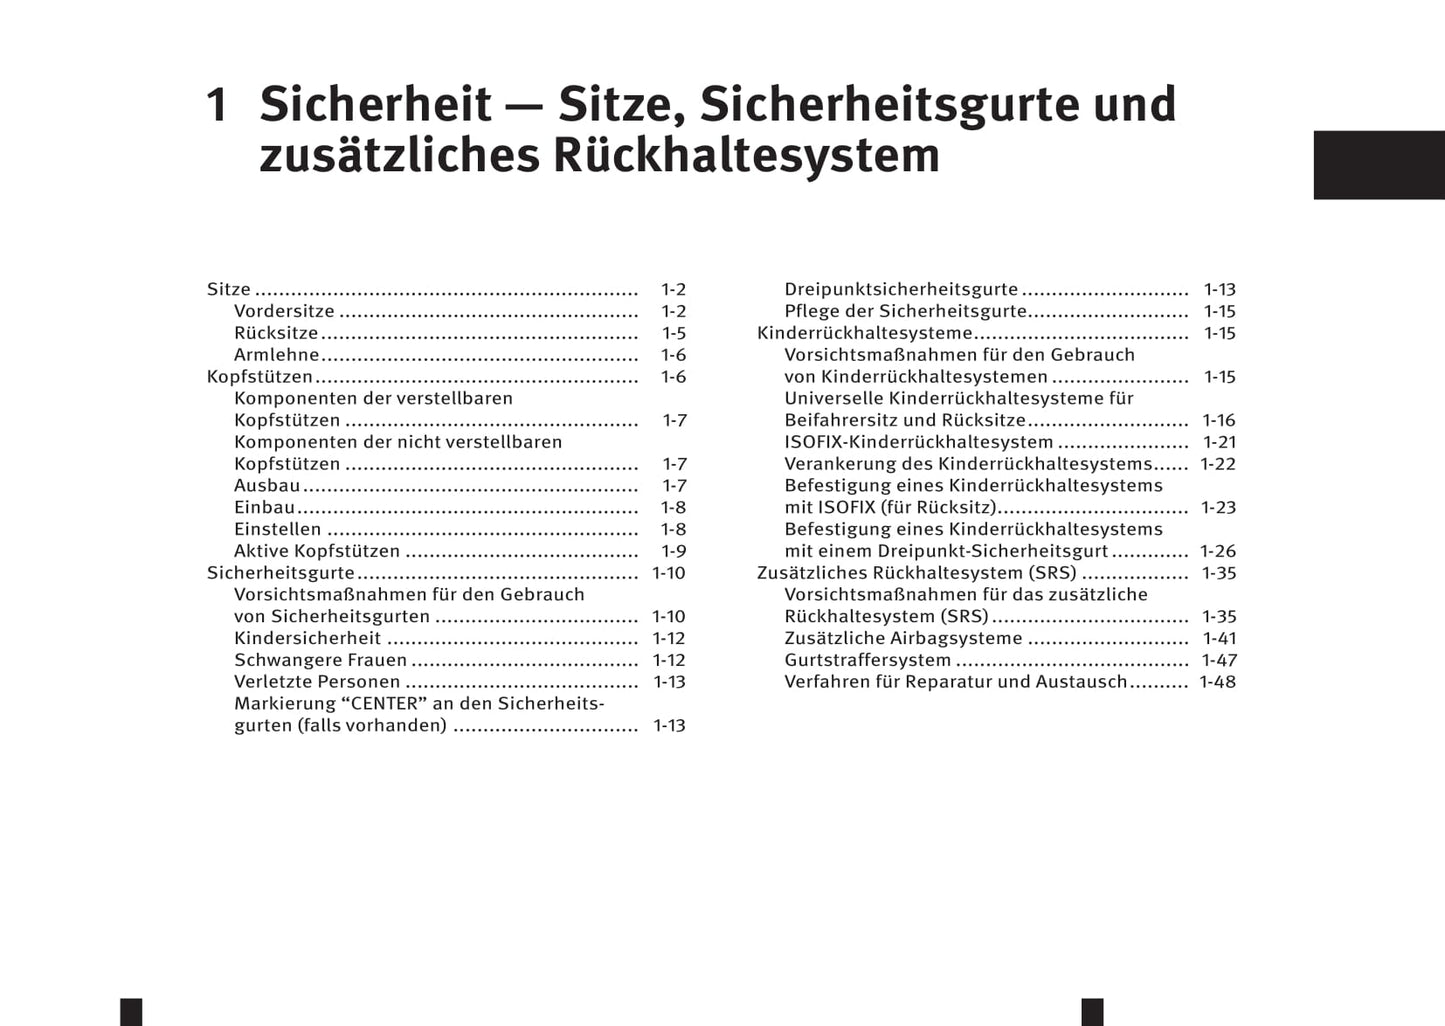 2016-2017 Infiniti QX70 Owner's Manual | German